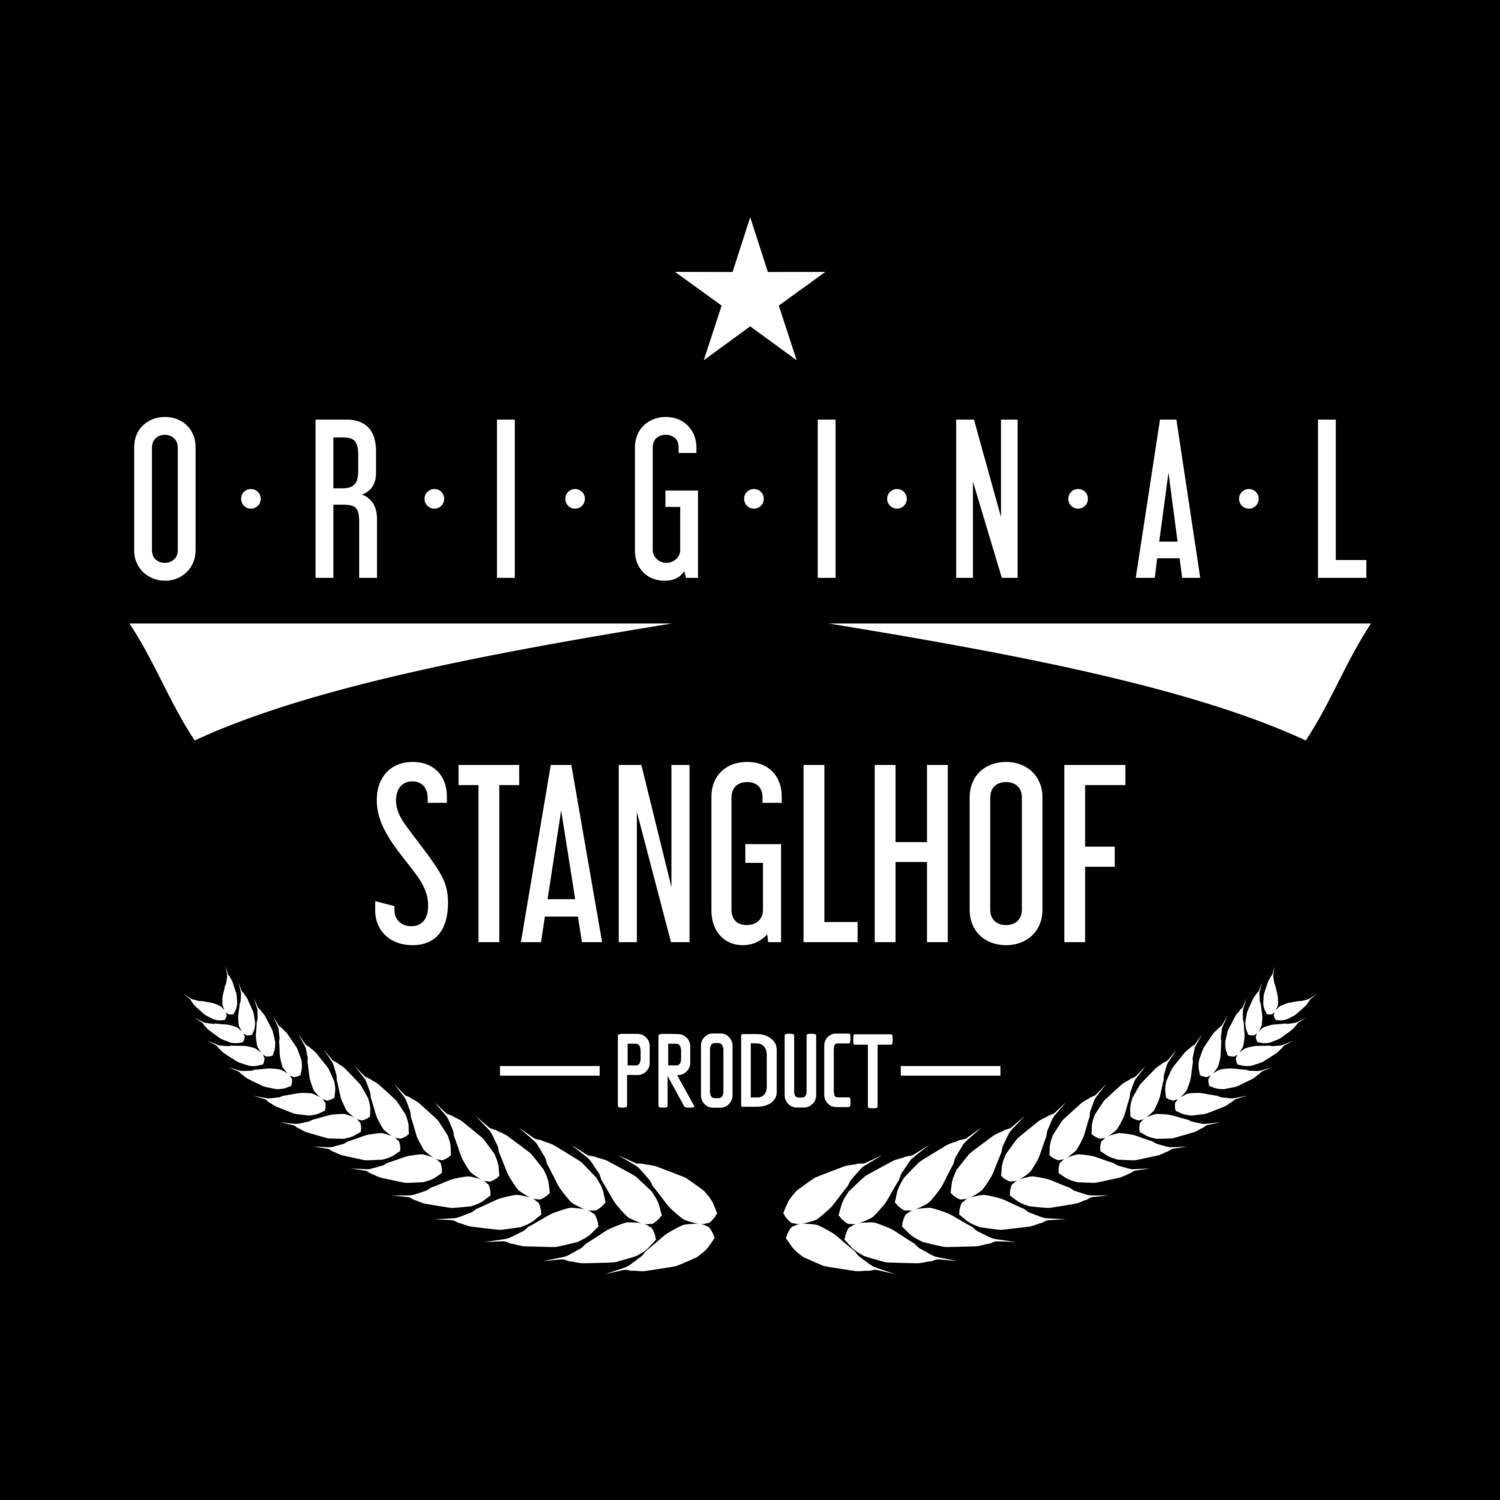 Stanglhof T-Shirt »Original Product«